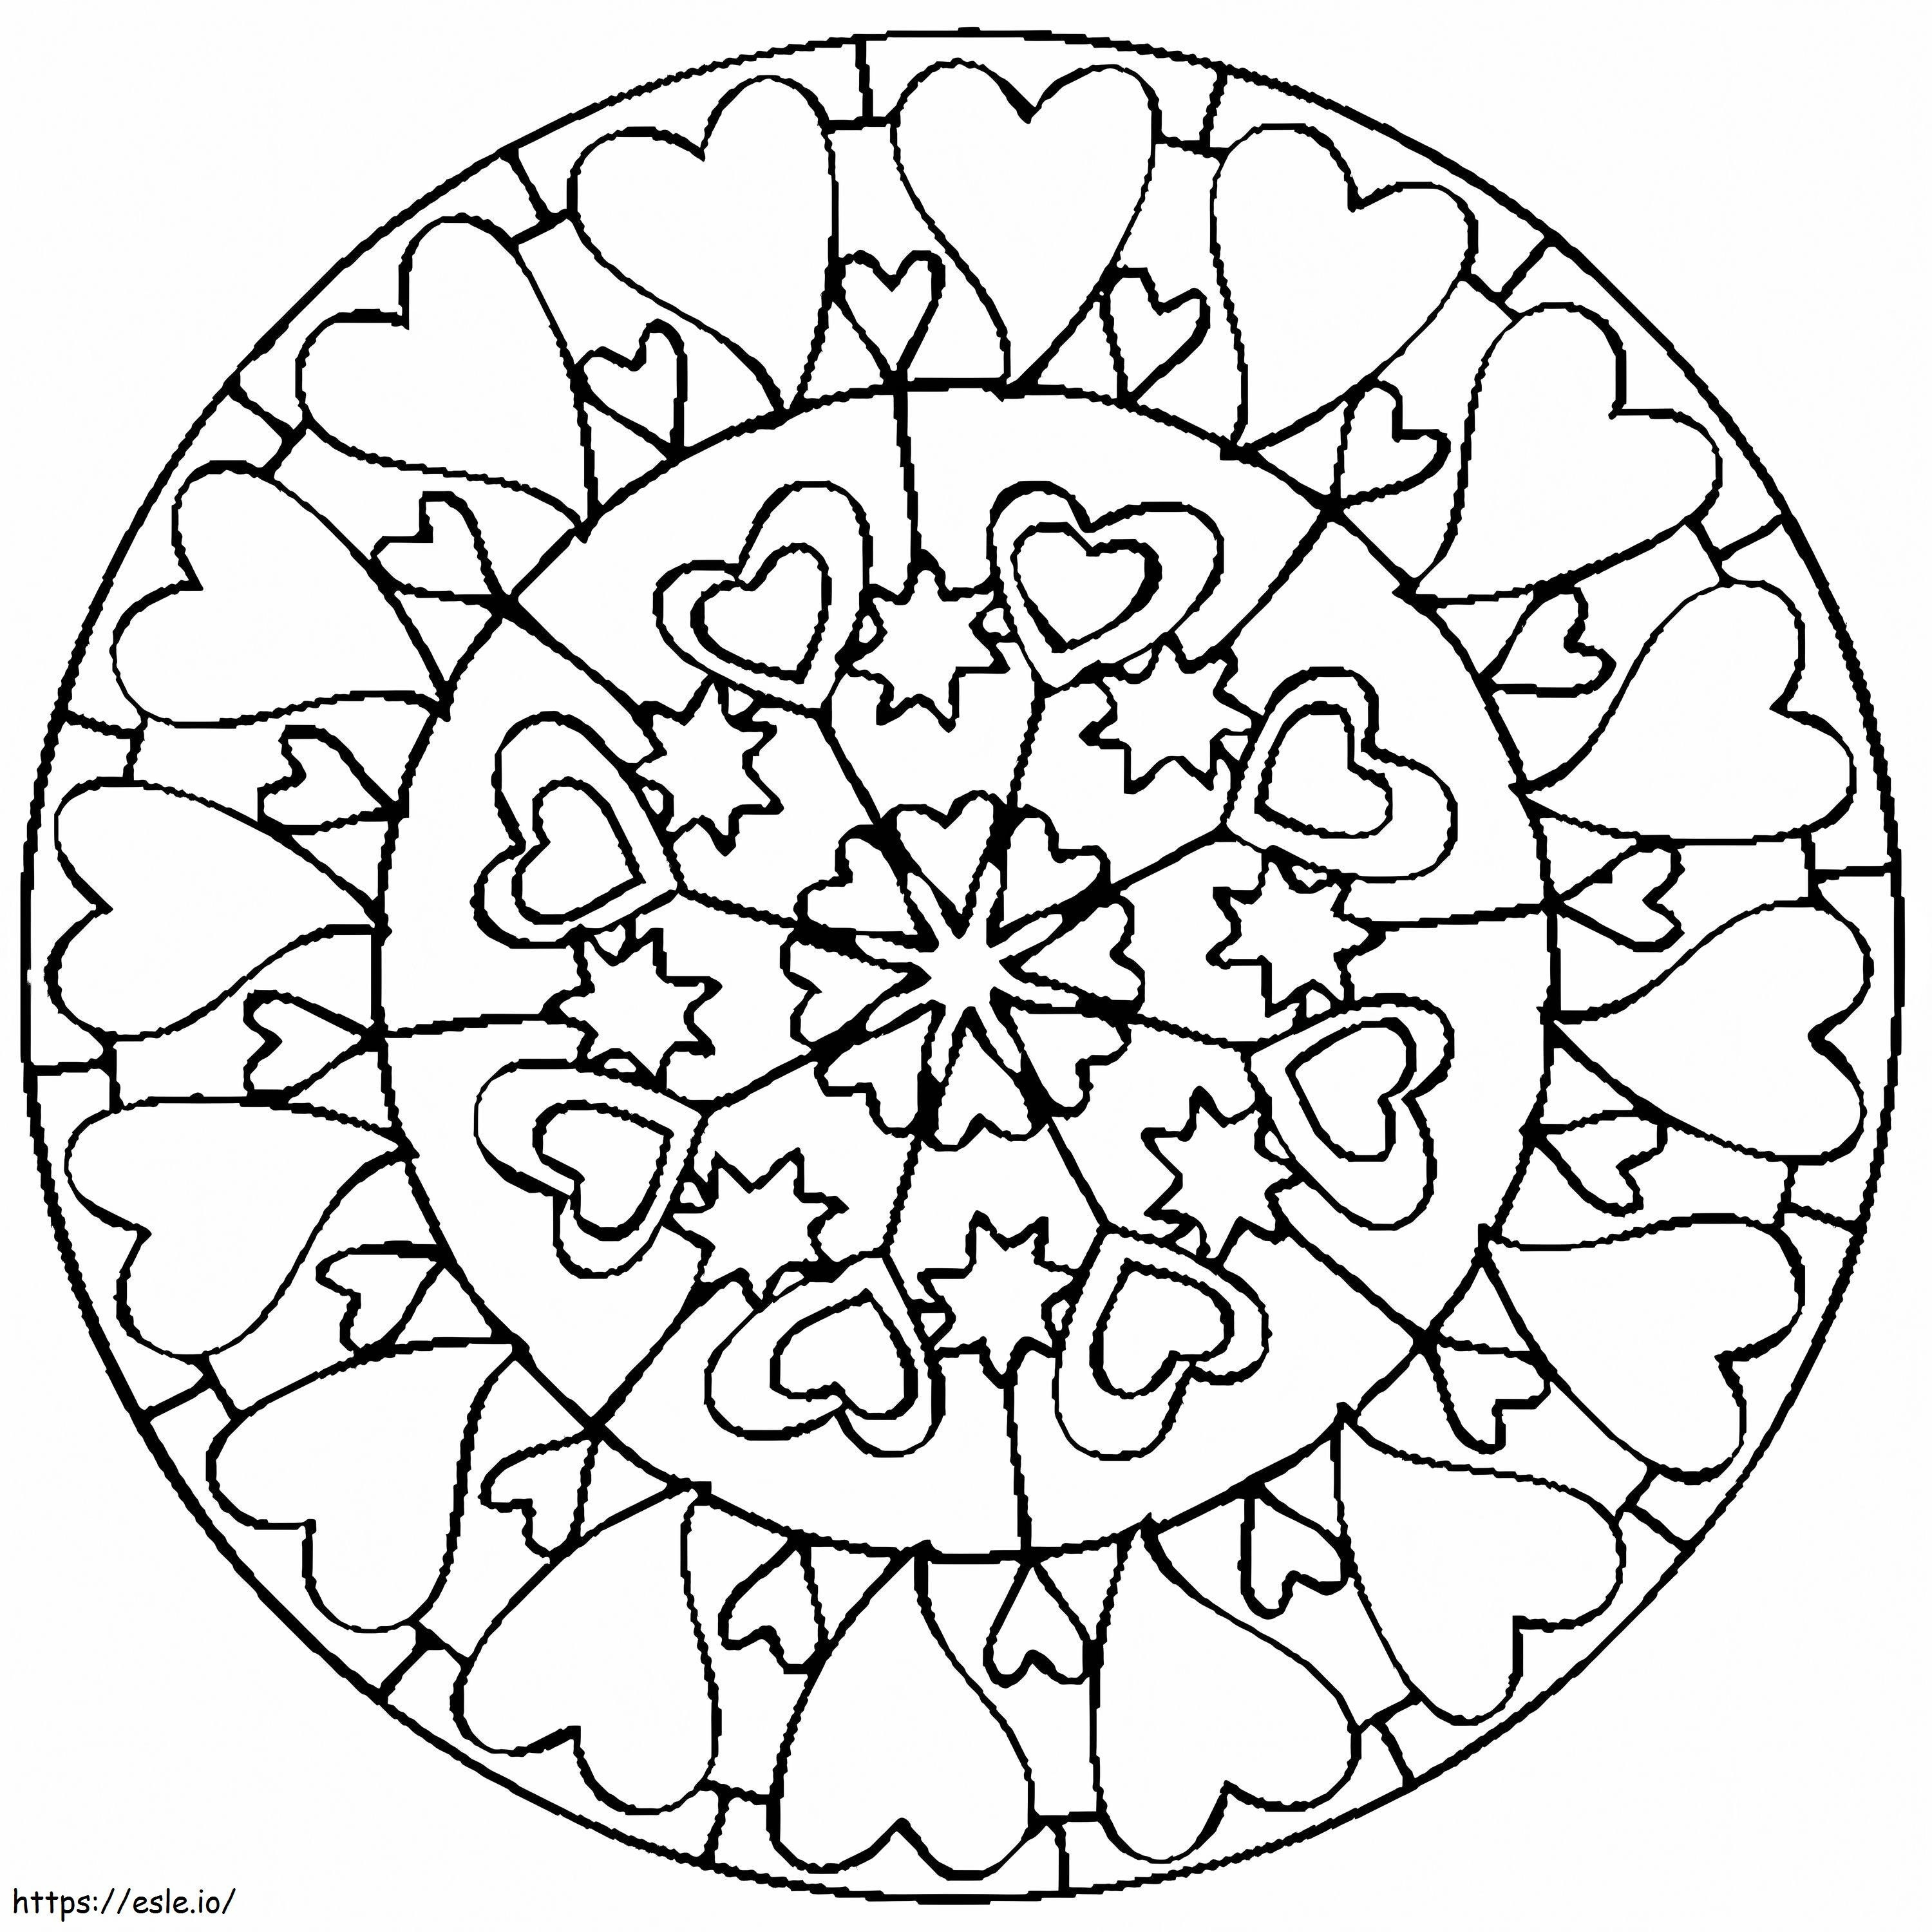 Coloriage Mandala Coeur Simple En Cercle à imprimer dessin